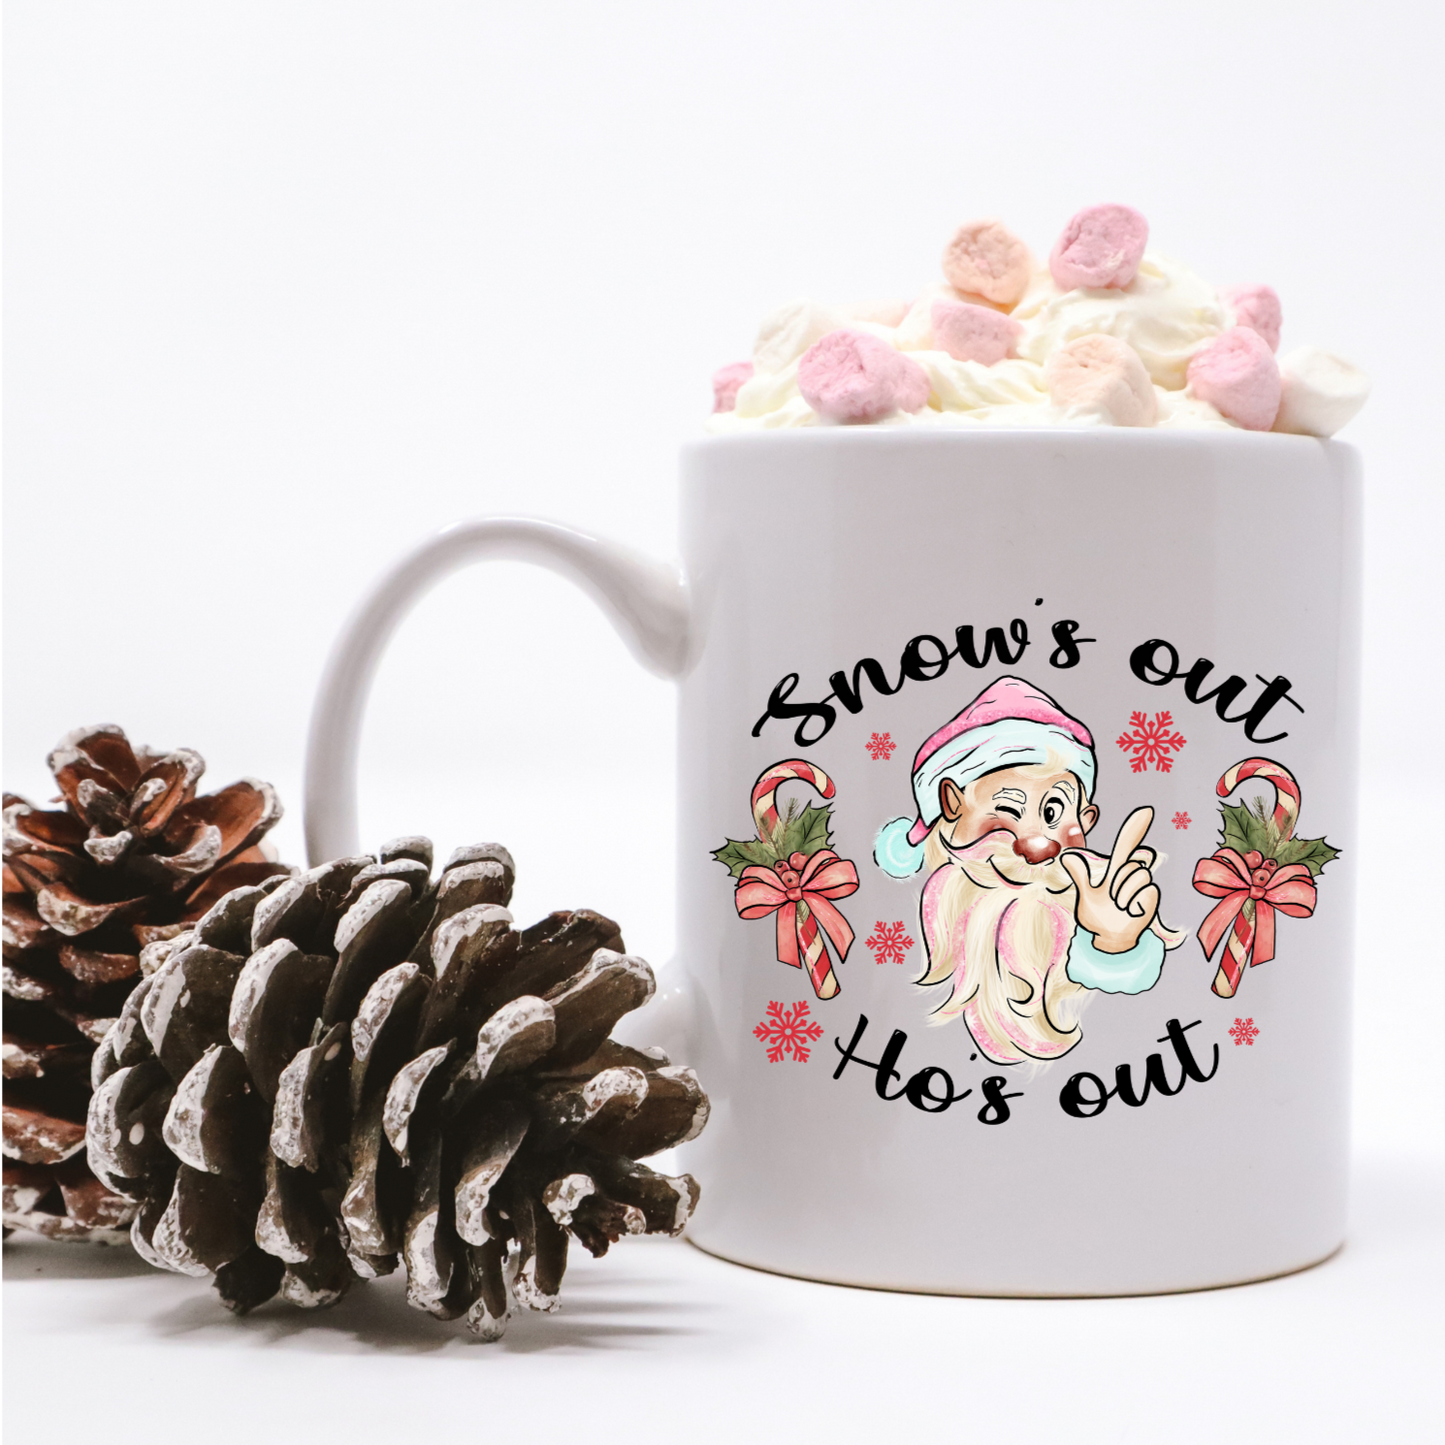 Snow's Out Ho's Out Coffee Mug